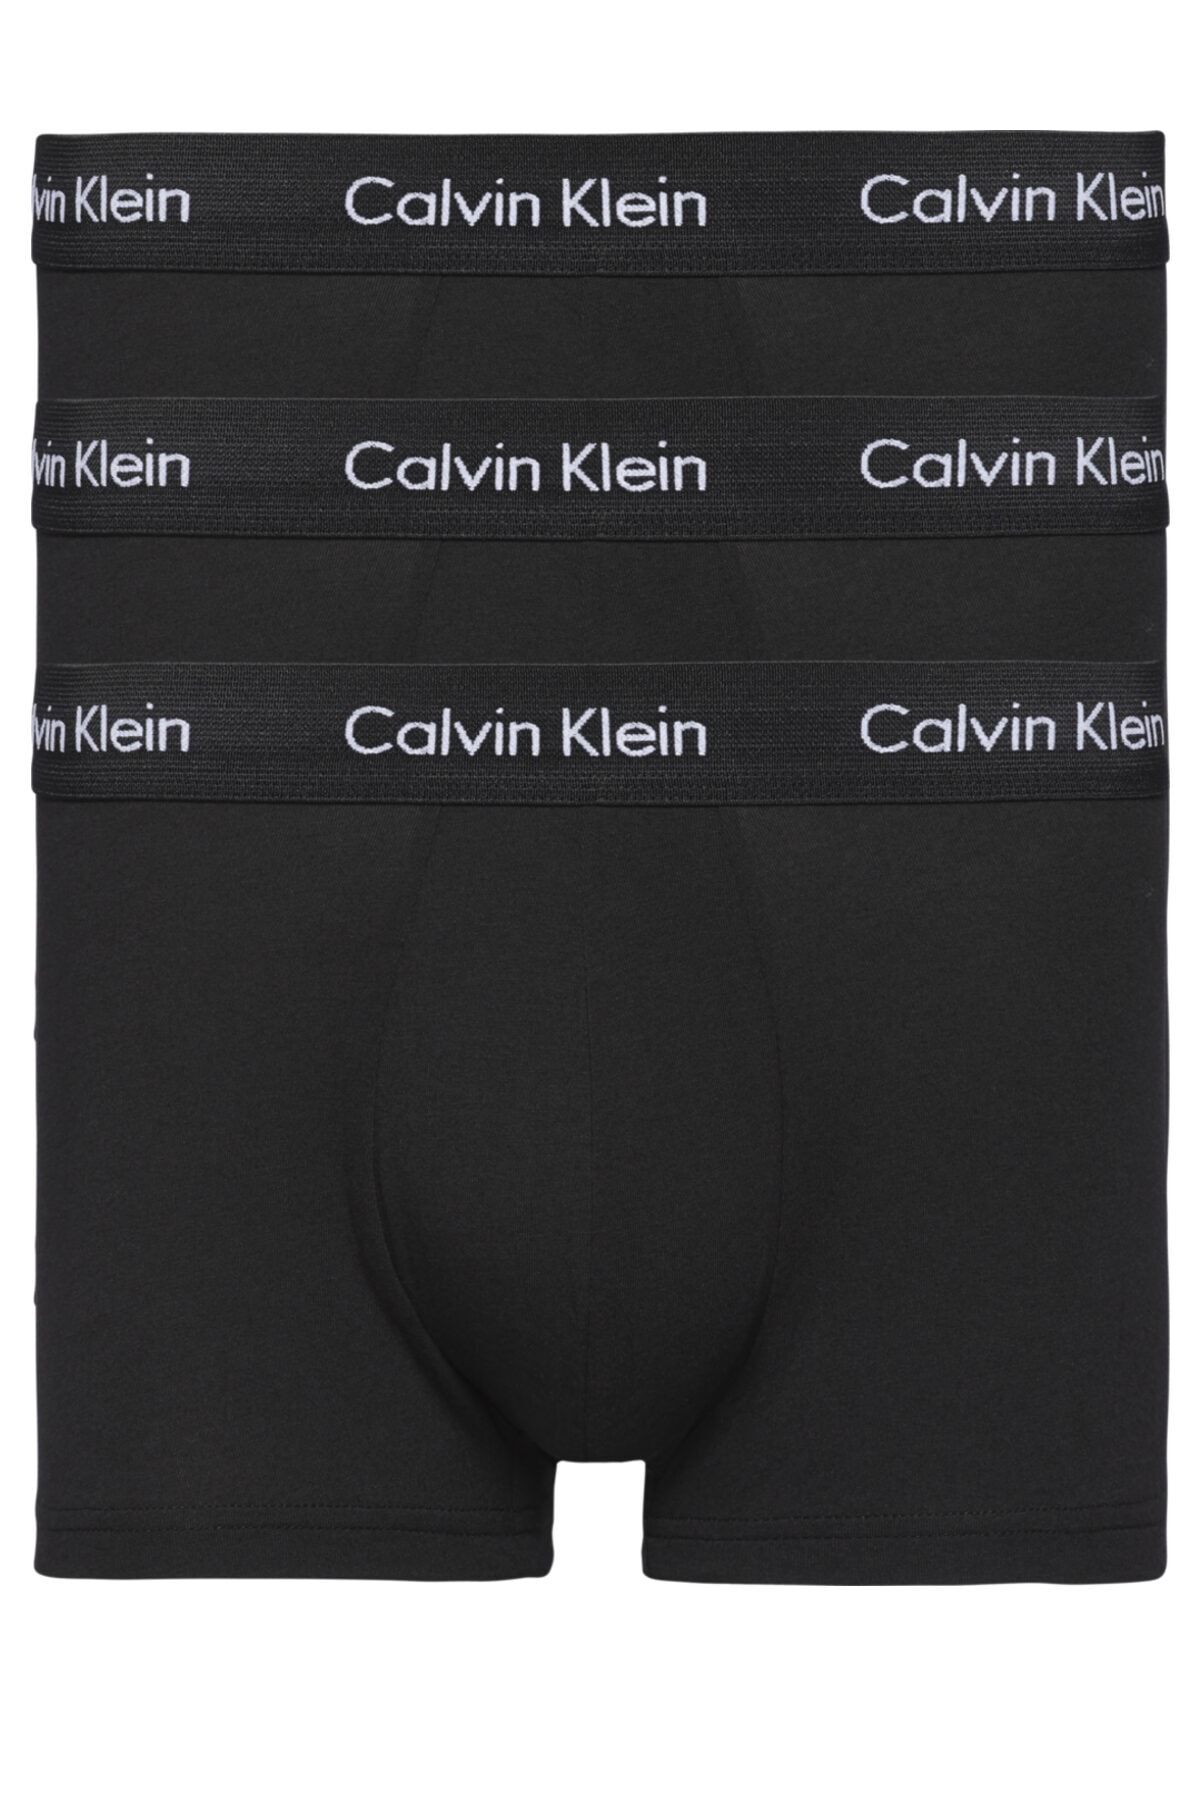 2023 Calvin Klein Boxer Modelleri ve Fiyatları - Trendyol